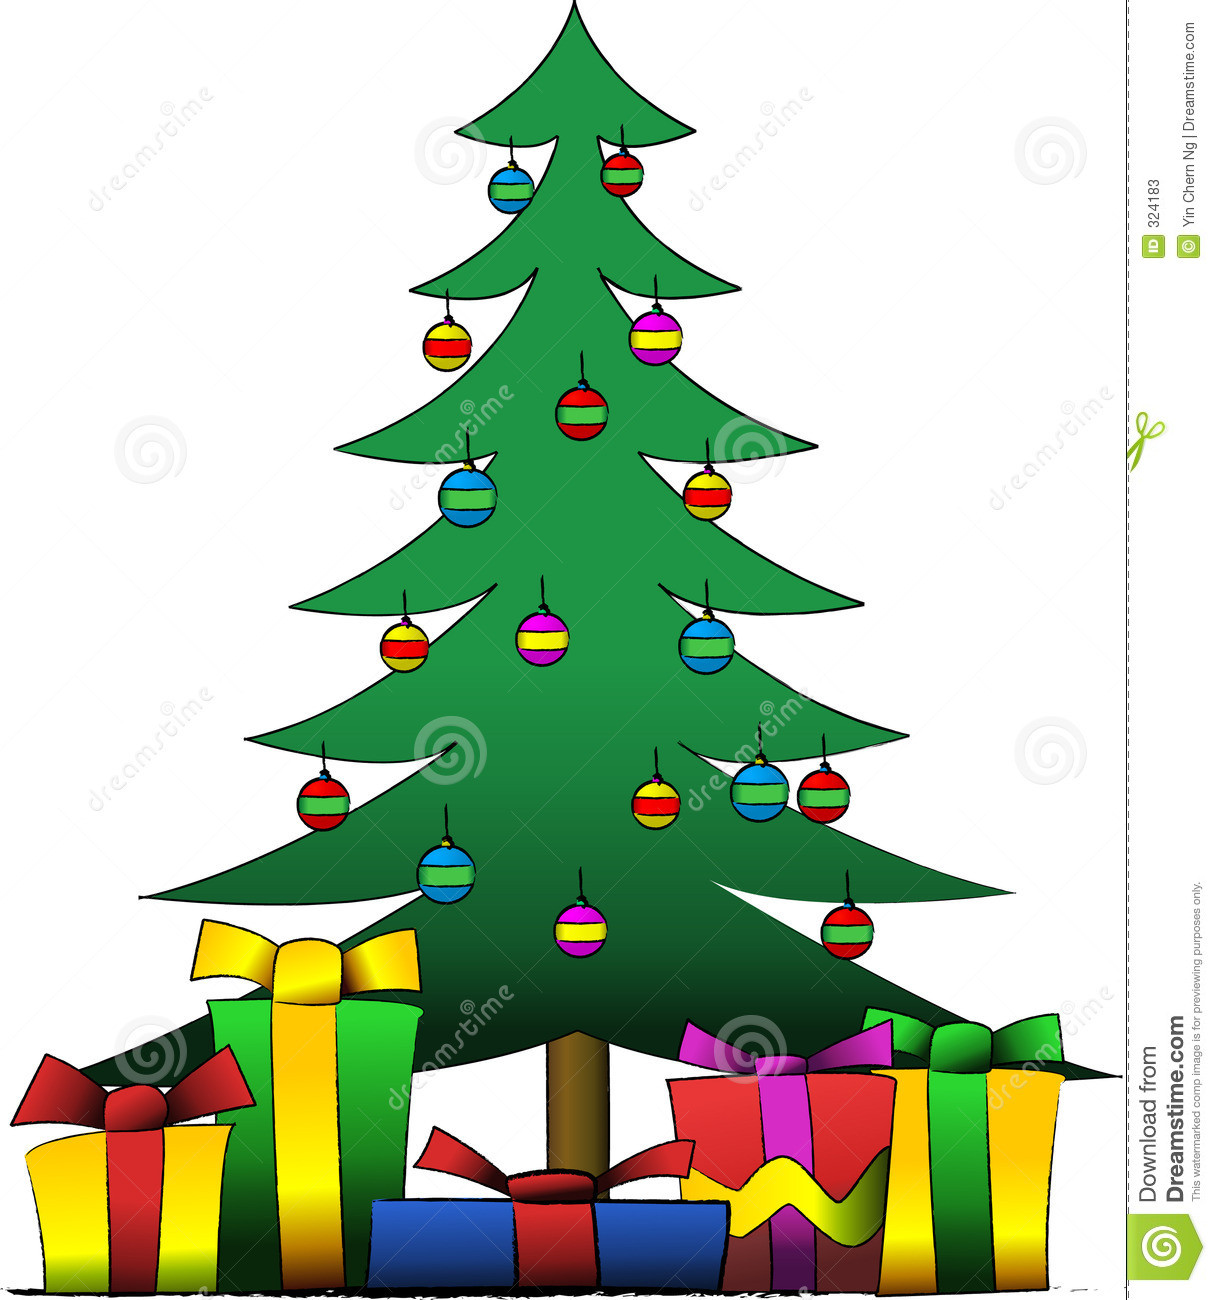 Weihnachtsbaum Geschenke
 Weihnachtsbaum Und Geschenke Vektor Abbildung Bild